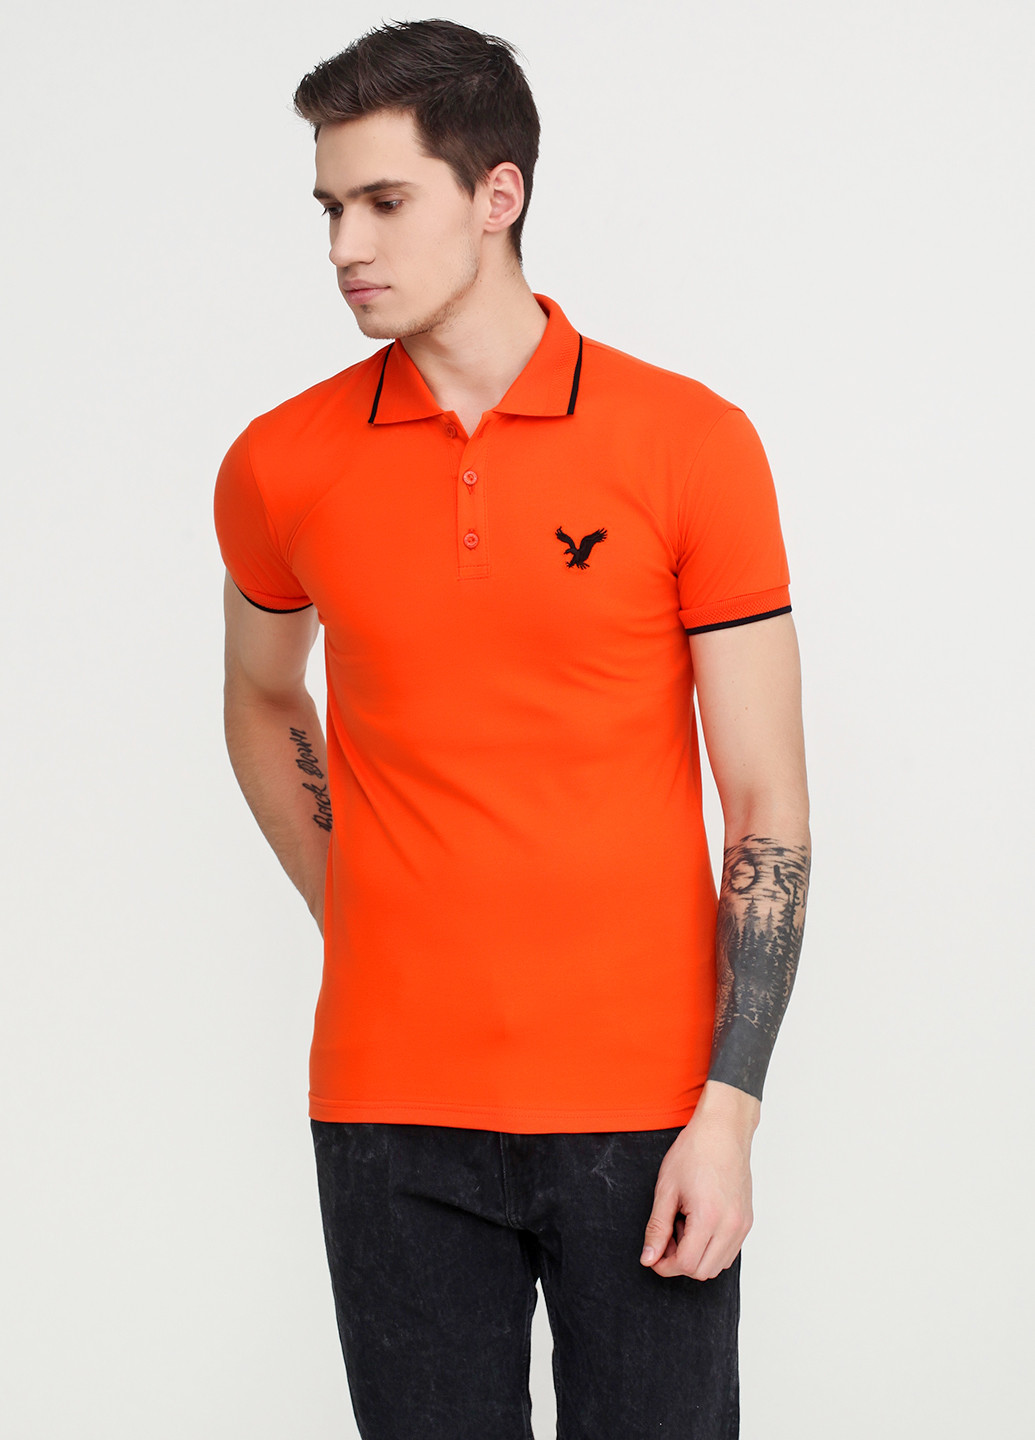 Оранжевая футболка-поло для мужчин EL & KEN с логотипом